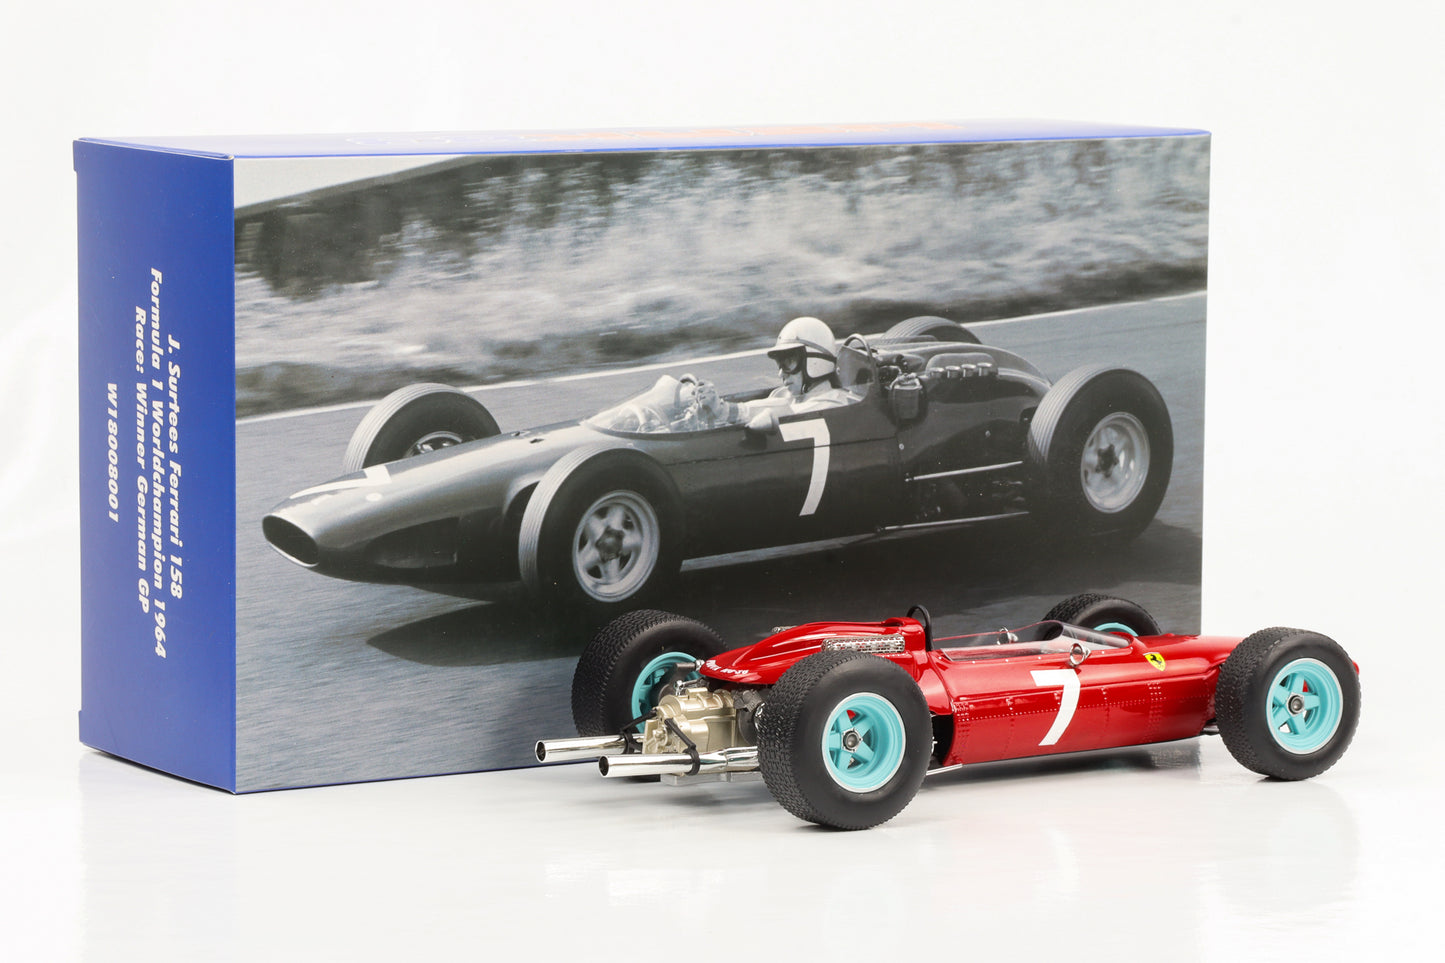 1:18 Ferrari 158 F1 #7 Surtees Campeón del mundo 1964 Ganador GP de Alemania Werk83